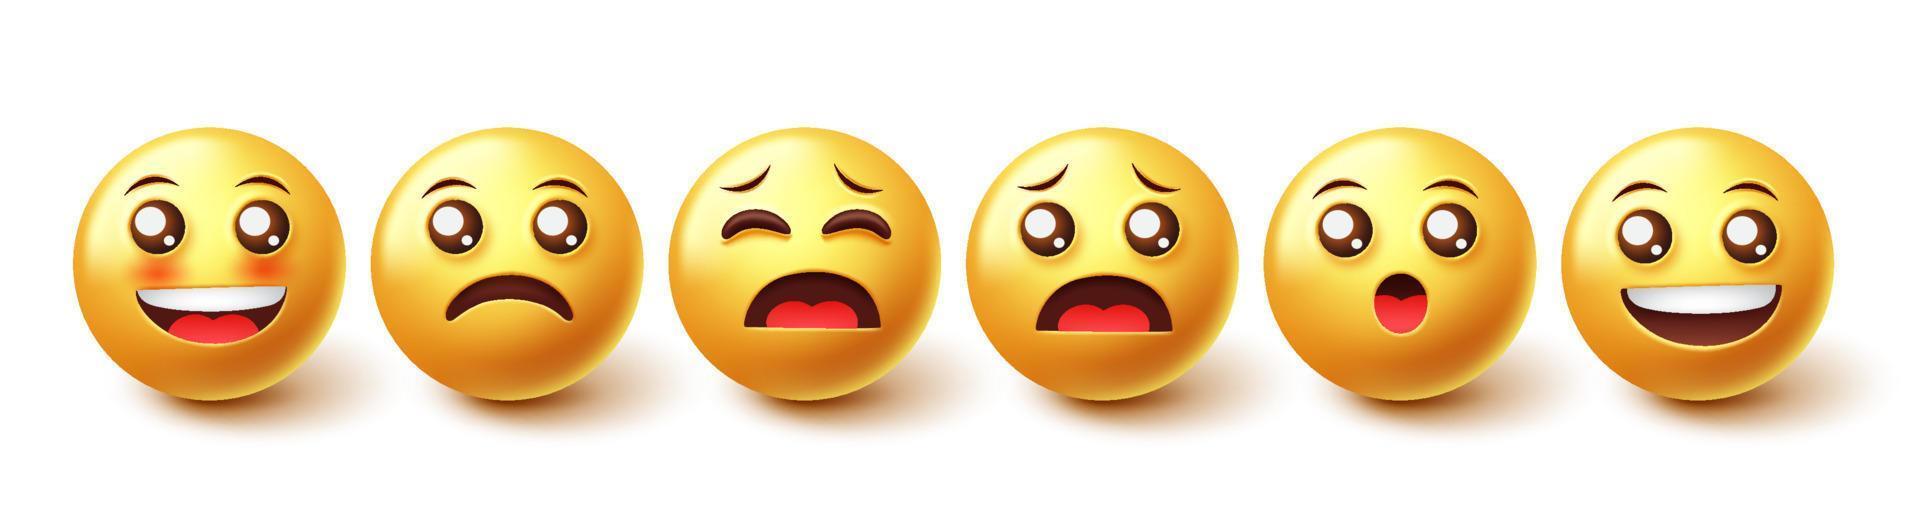 Emojis-Zeichenvektorsatz. Emoji-Emoticons in 3D-Grafikdesign mit süßen Gesichtsausdrücken von glücklichen und traurigen Gesichtsreaktionen einzeln auf weißem Hintergrund. Vektor-Illustration. vektor